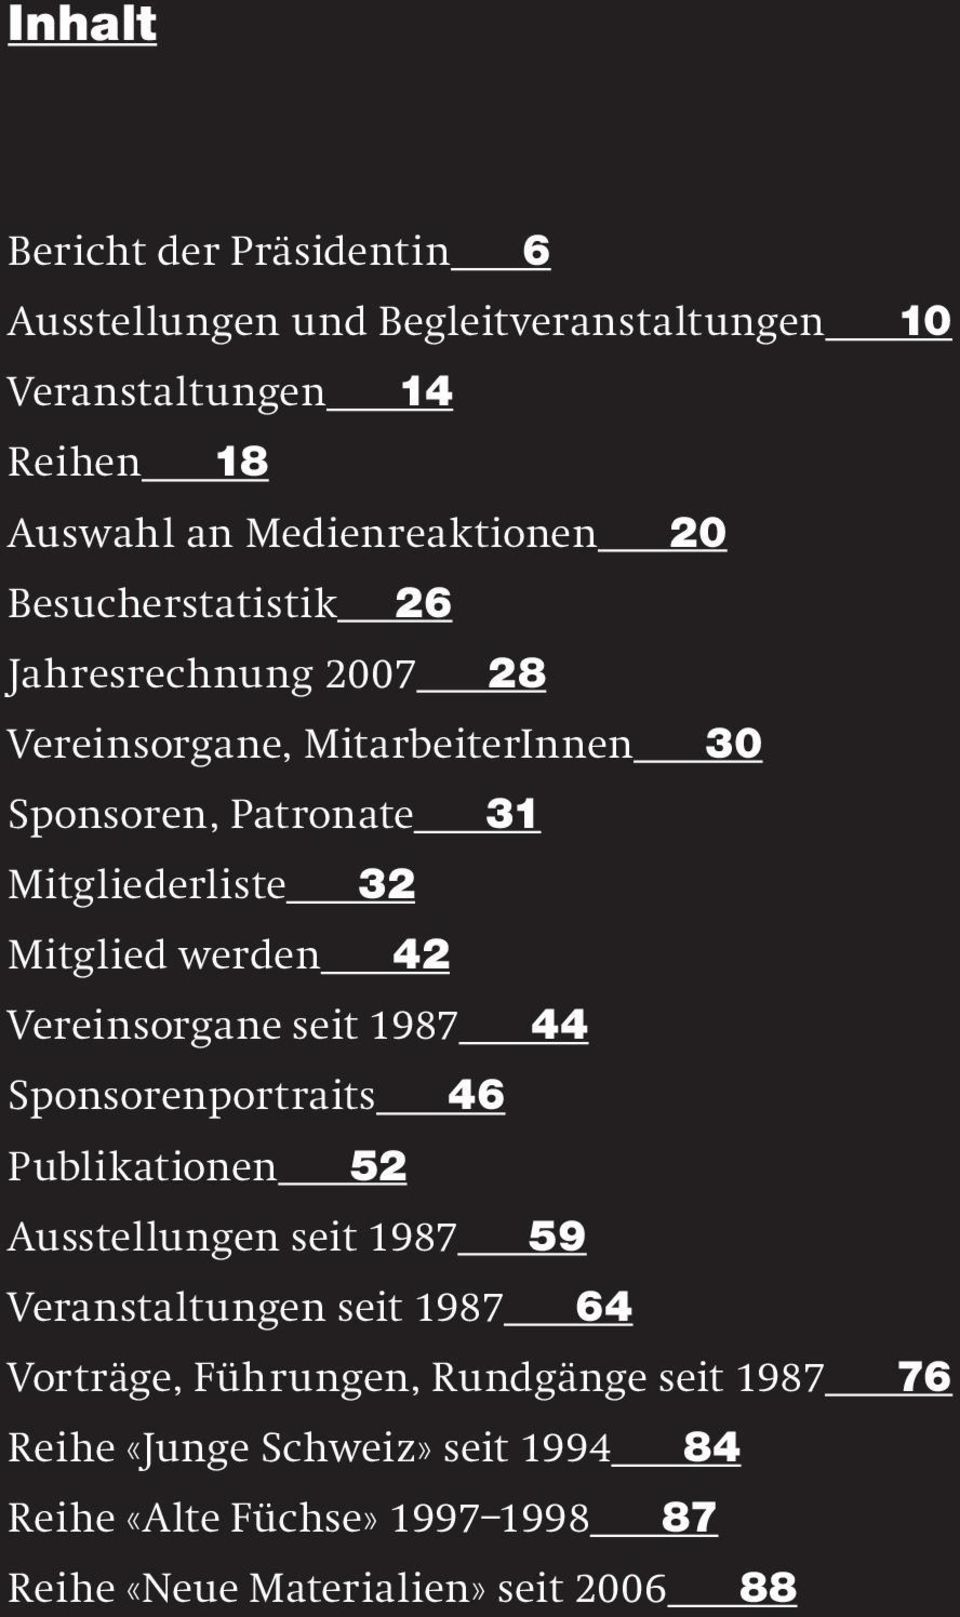 42 Vereinsorgane seit 1987 44 Sponsorenportraits 46 Publikationen 52 Ausstellungen seit 1987 59 Veranstaltungen seit 1987 64 Vorträge,